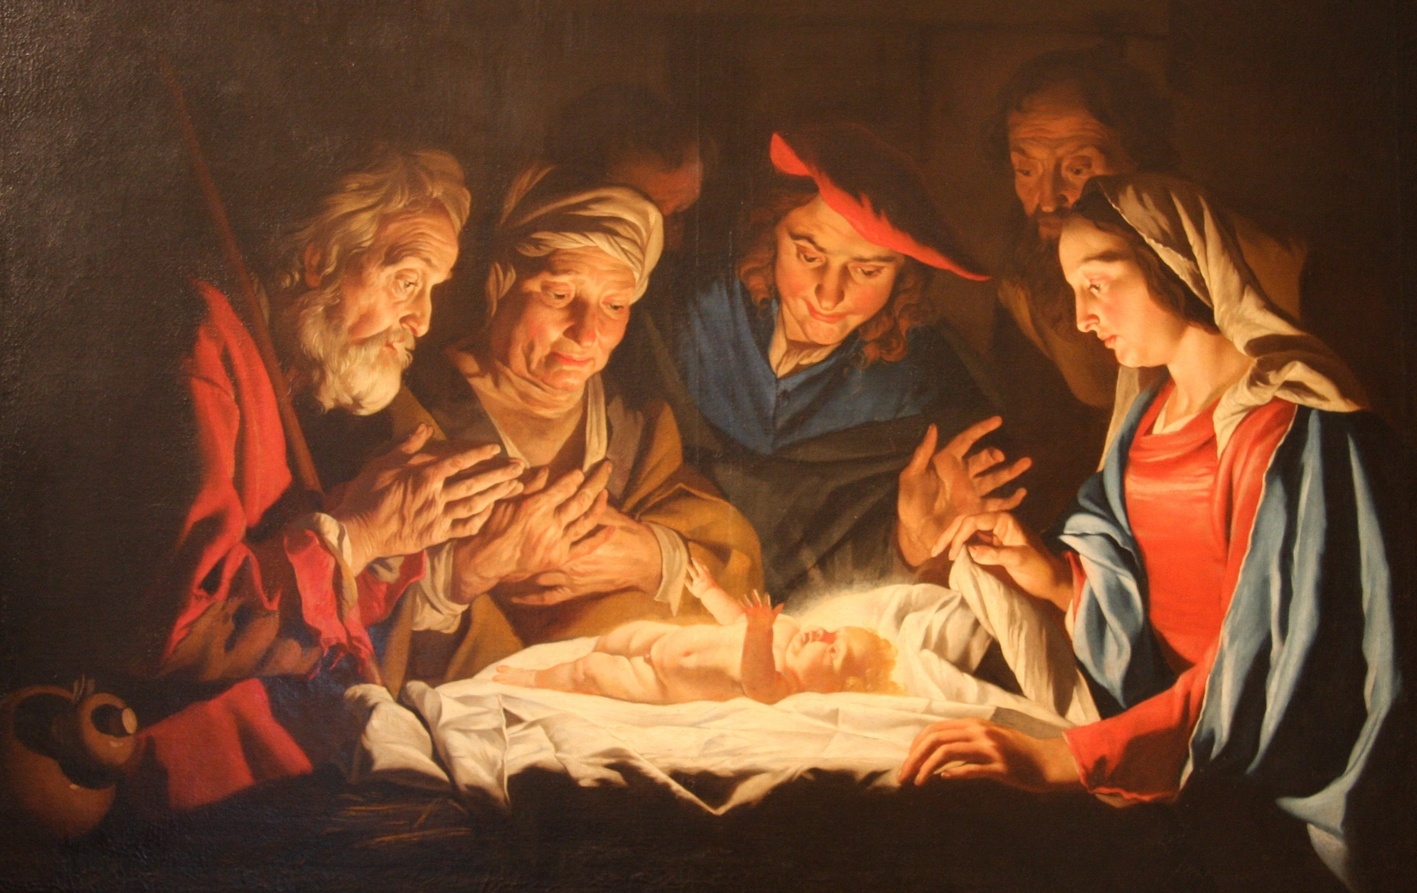 La naissance de Jésus selon les évangiles